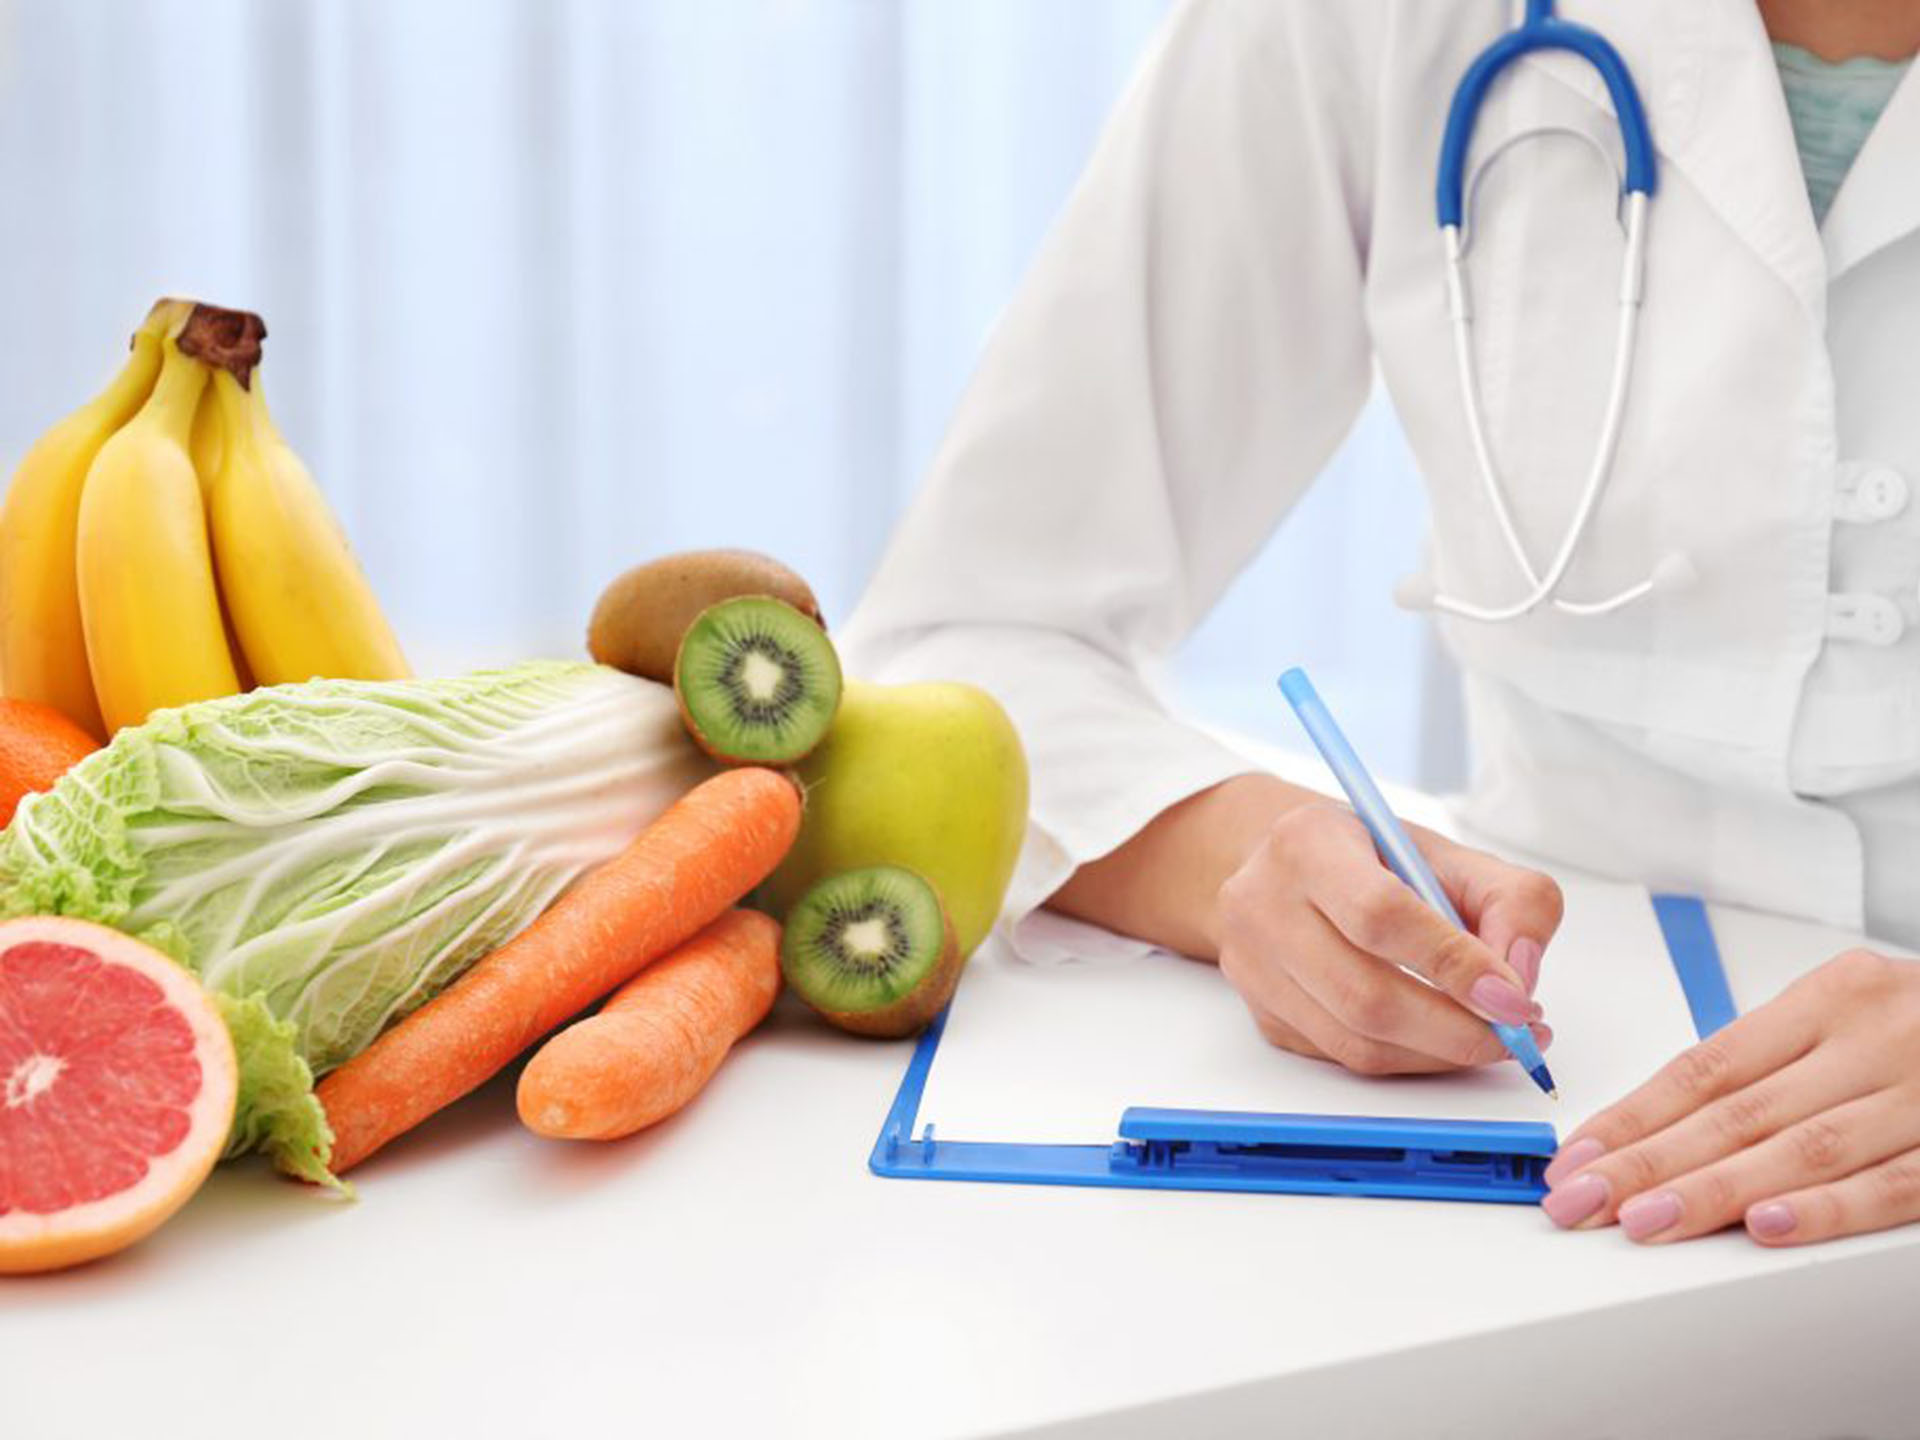 Эксперты Роспотребнадзора представили рекомендации по здоровому питанию в условиях пандемии COVID-19